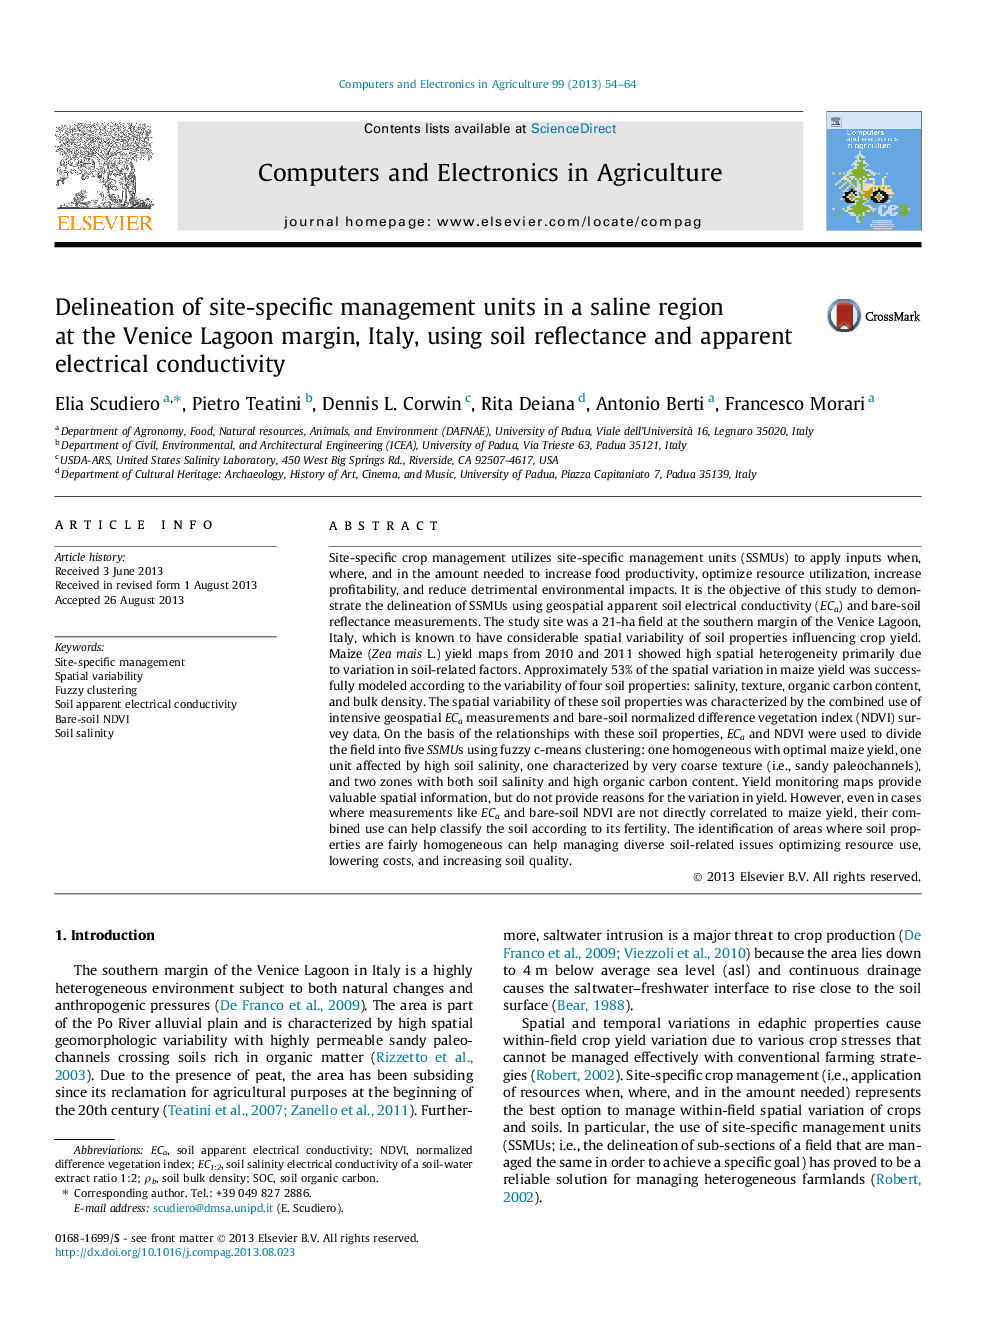 تعریف واحدهای مدیریت سایت در یک منطقه شور در حاشیه ونیز حاشیه، ایتالیا، با استفاده از بازتابی خاک و هدایت الکتریکی ظاهری 